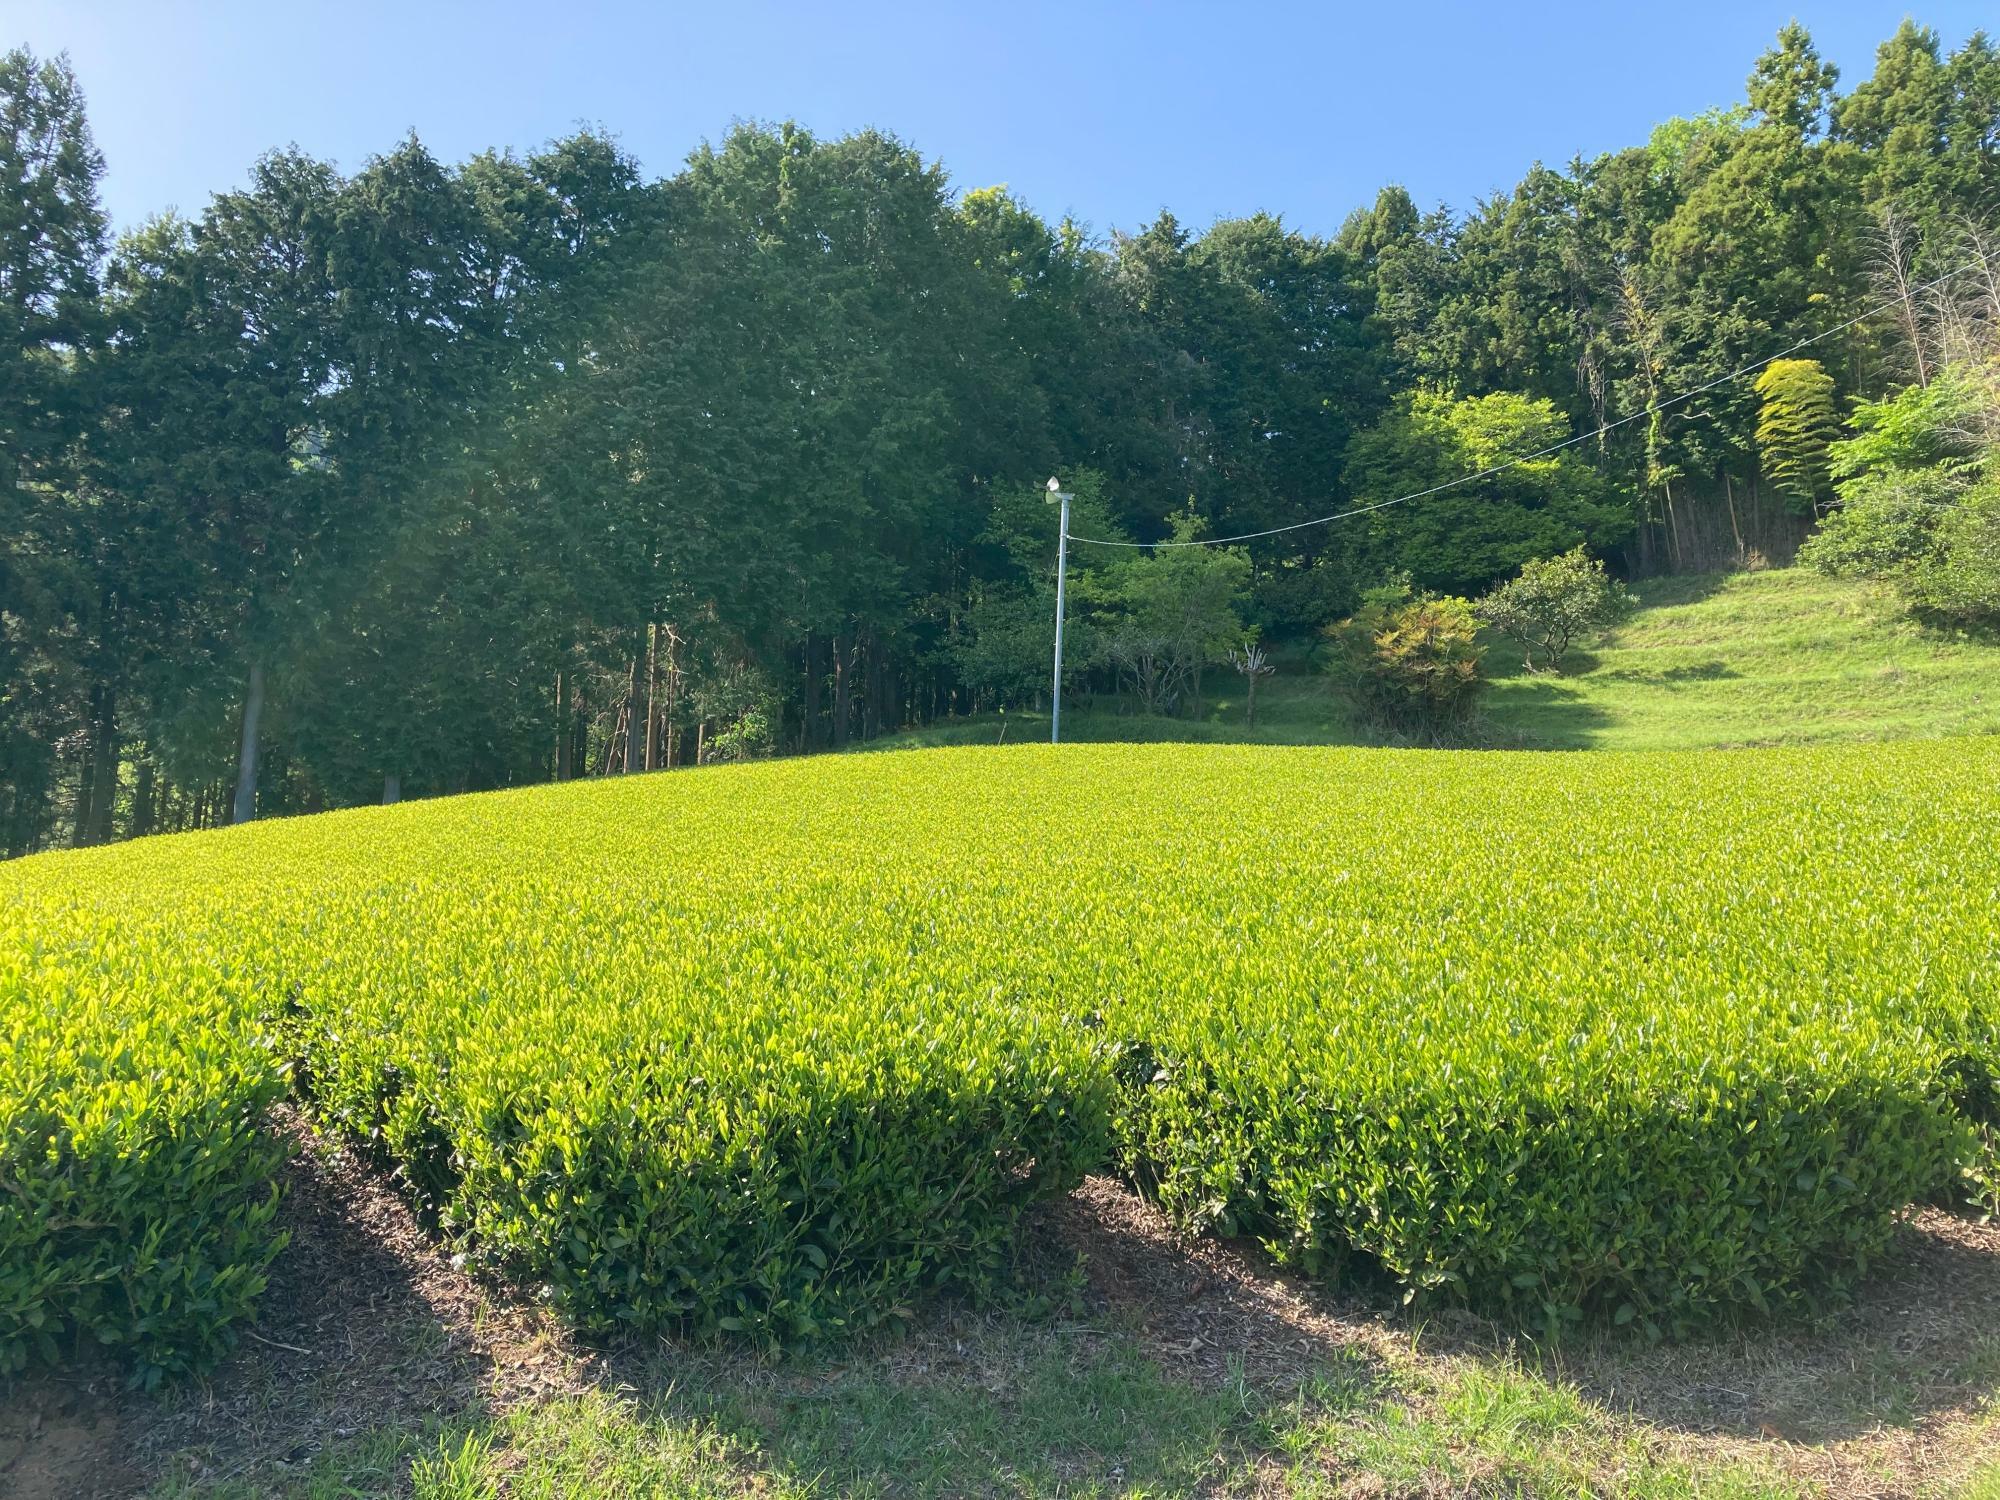 「やぶきた」という品種の茶畑。全国の煎茶の７～８割が「やぶきた」で作られていると言われ、日本で最もメジャーなお茶の品種。